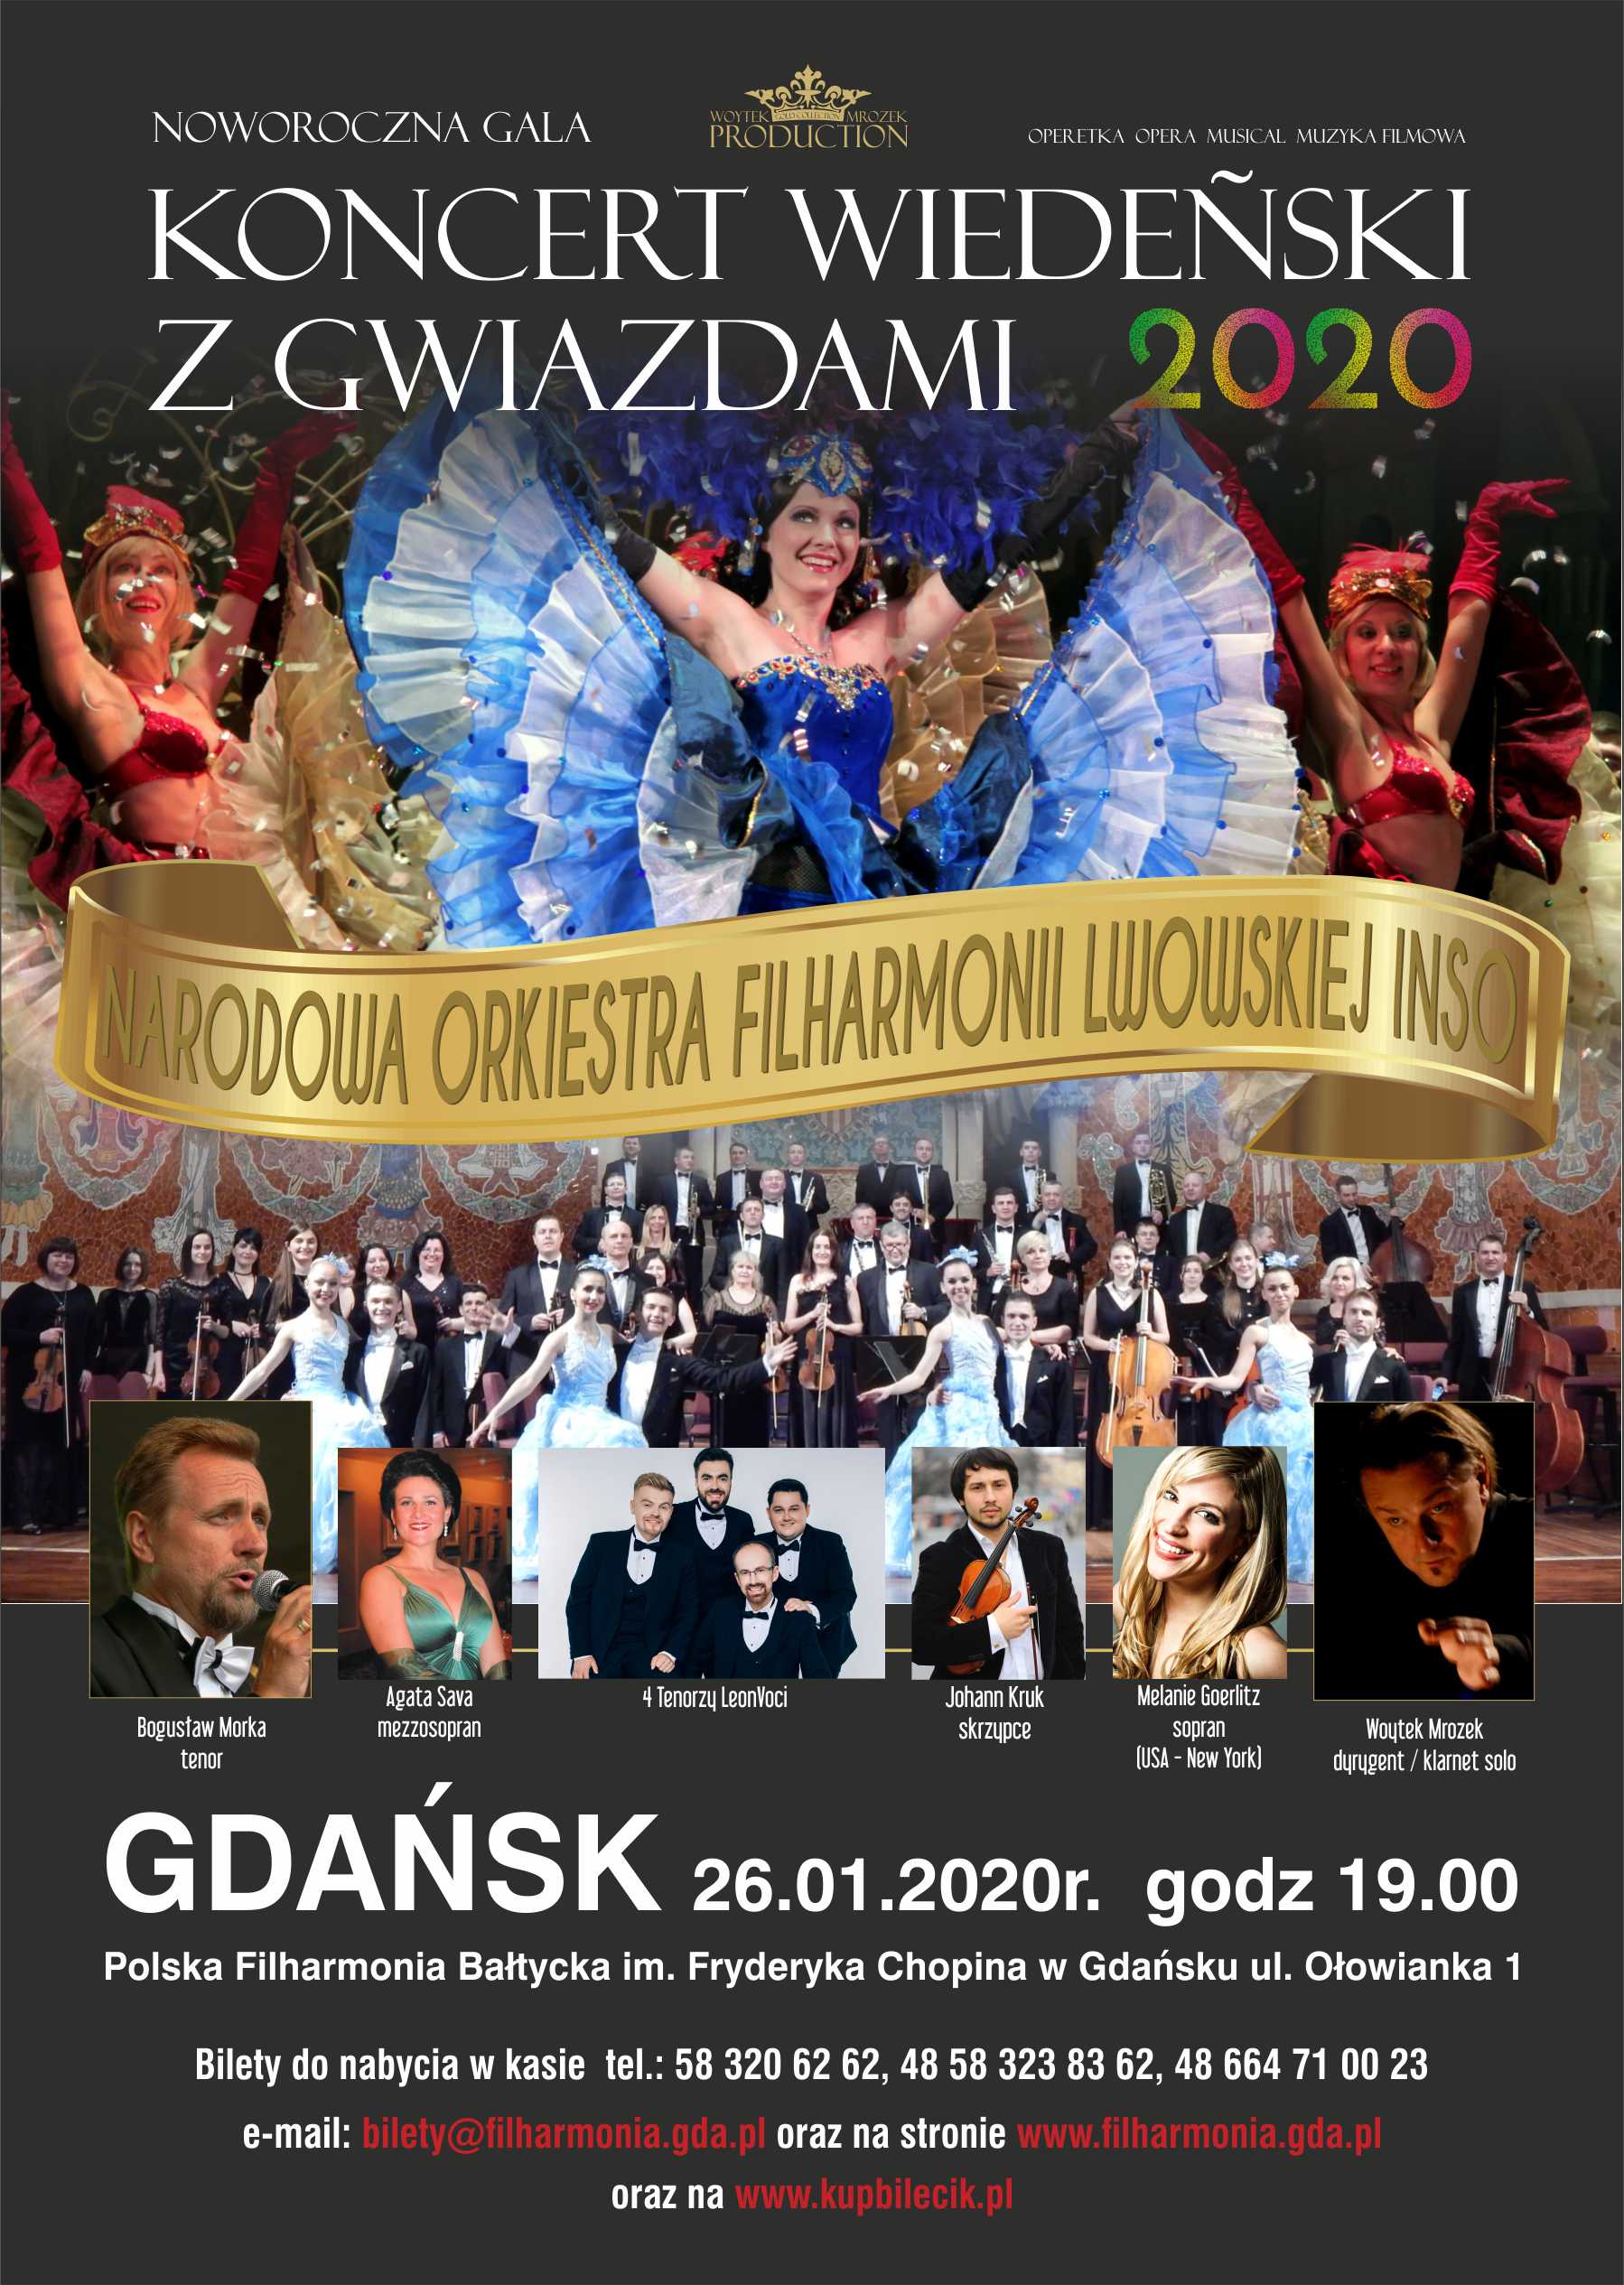 Gdansk www